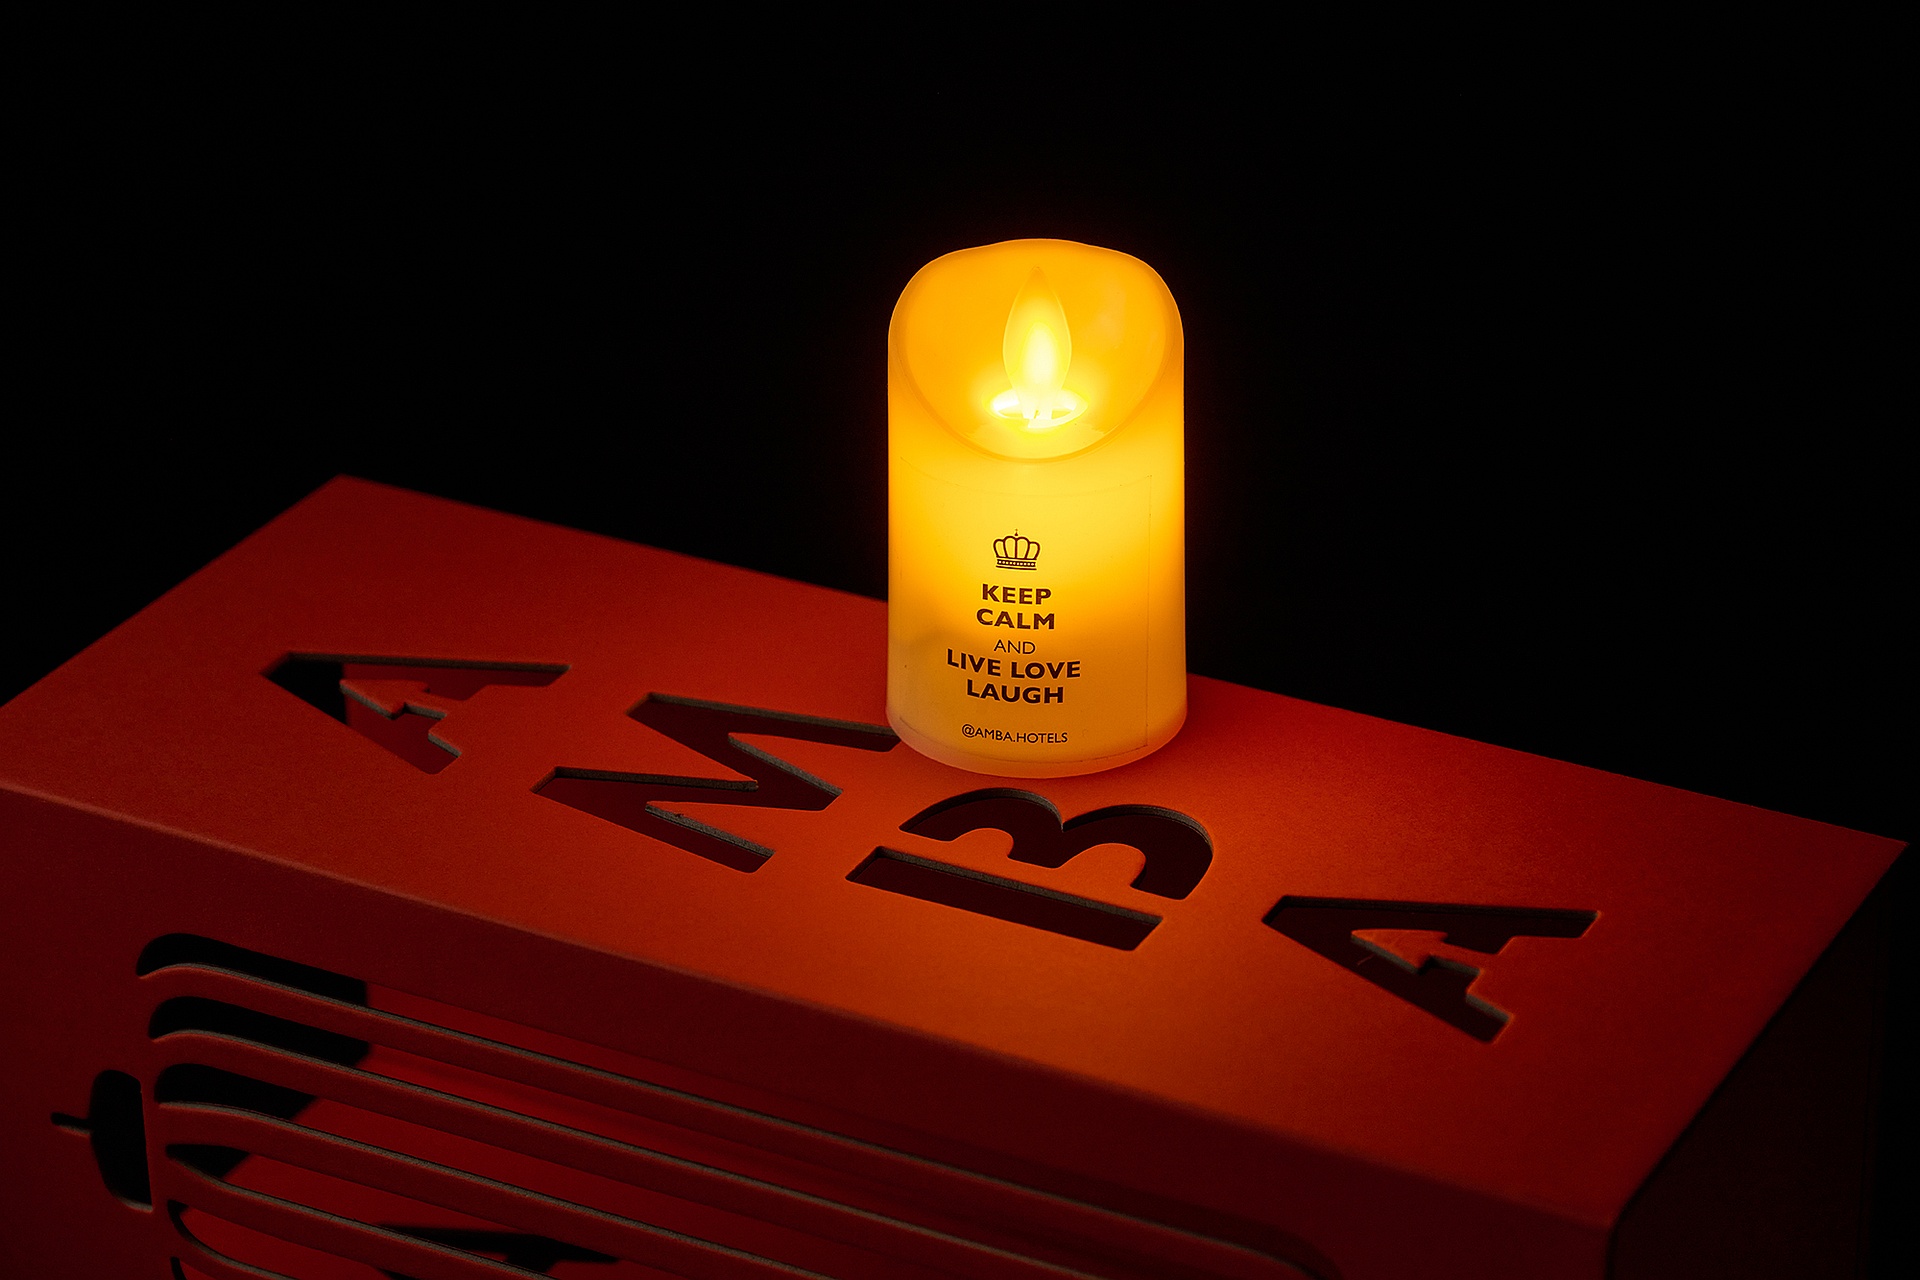 台北西門町意舎酒店天天情人節專案免費意舍 LED 蠟燭